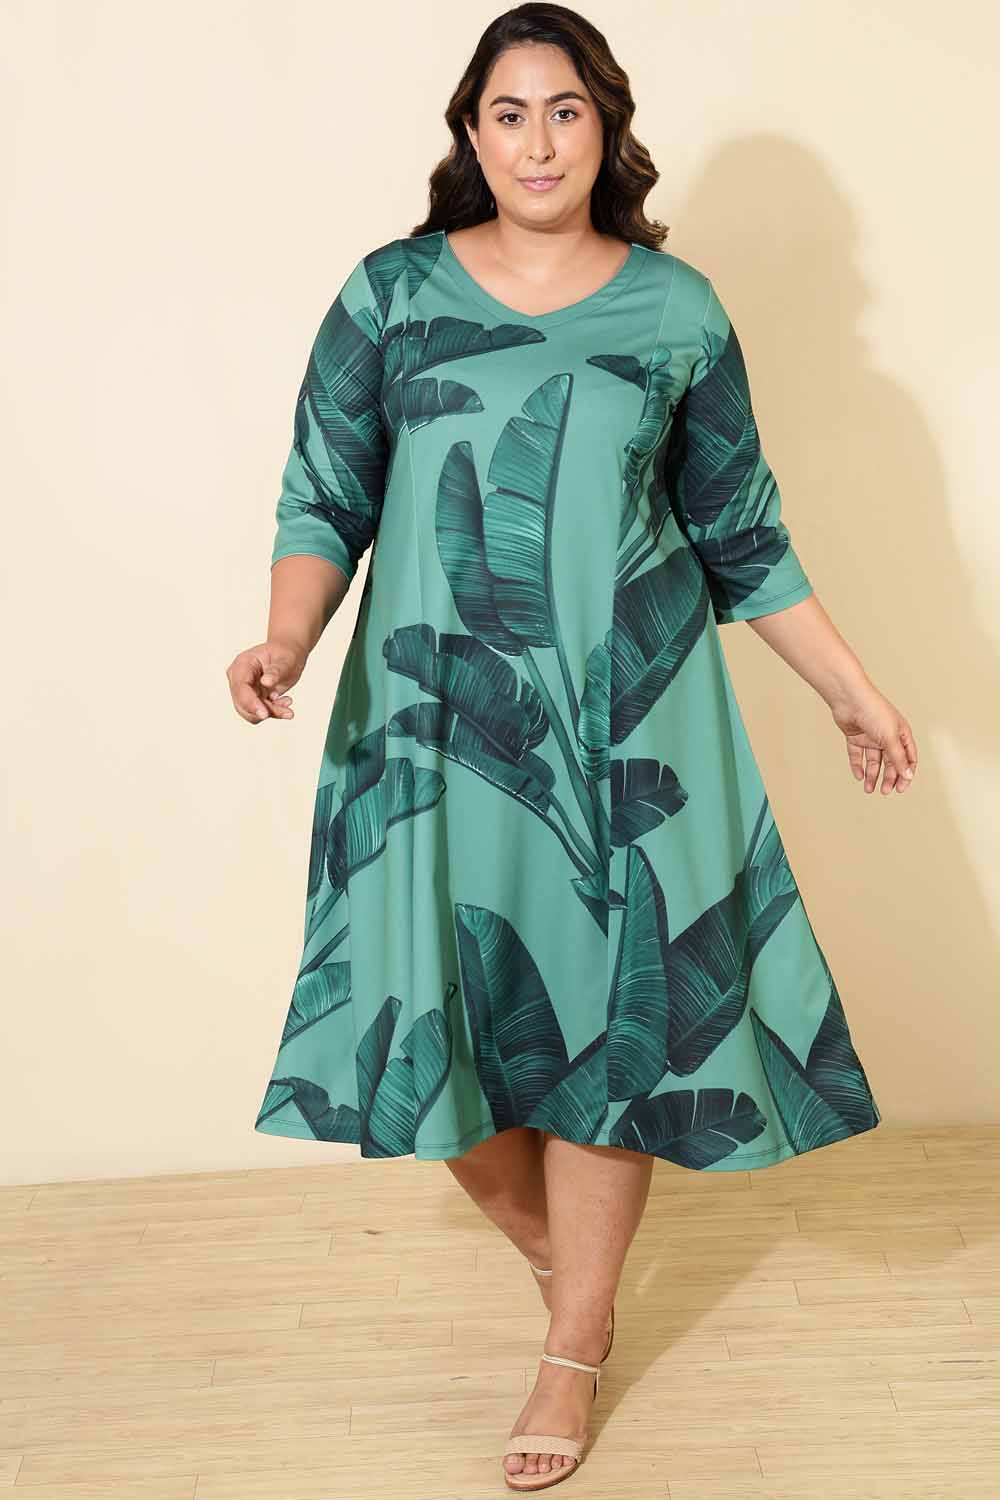 Plus Size Green Tropical Print A line Dress